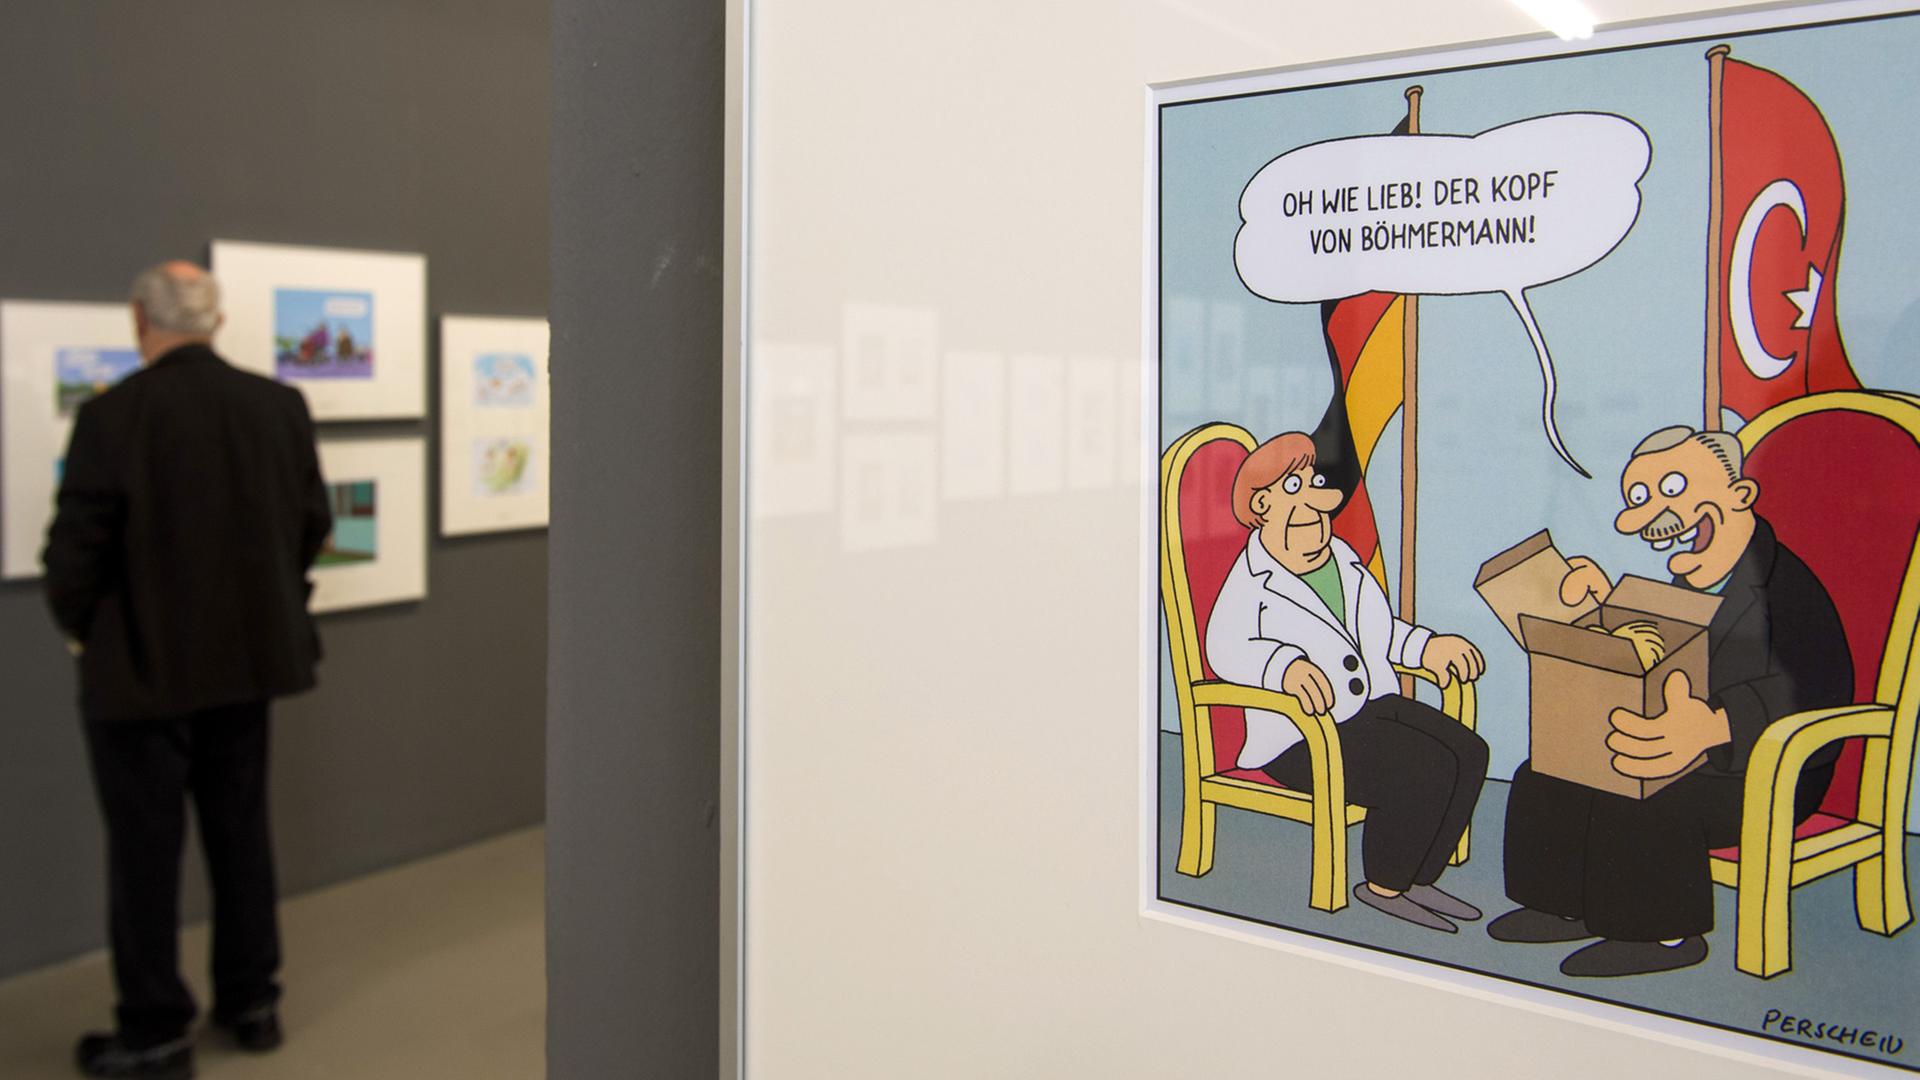 Museum Weserburg für aktuelle Kunst in Bremen: Blick in die Ausstellung zum Deutschen Karikaturenpreis 2016 – "Bis hierhin und weiter!"